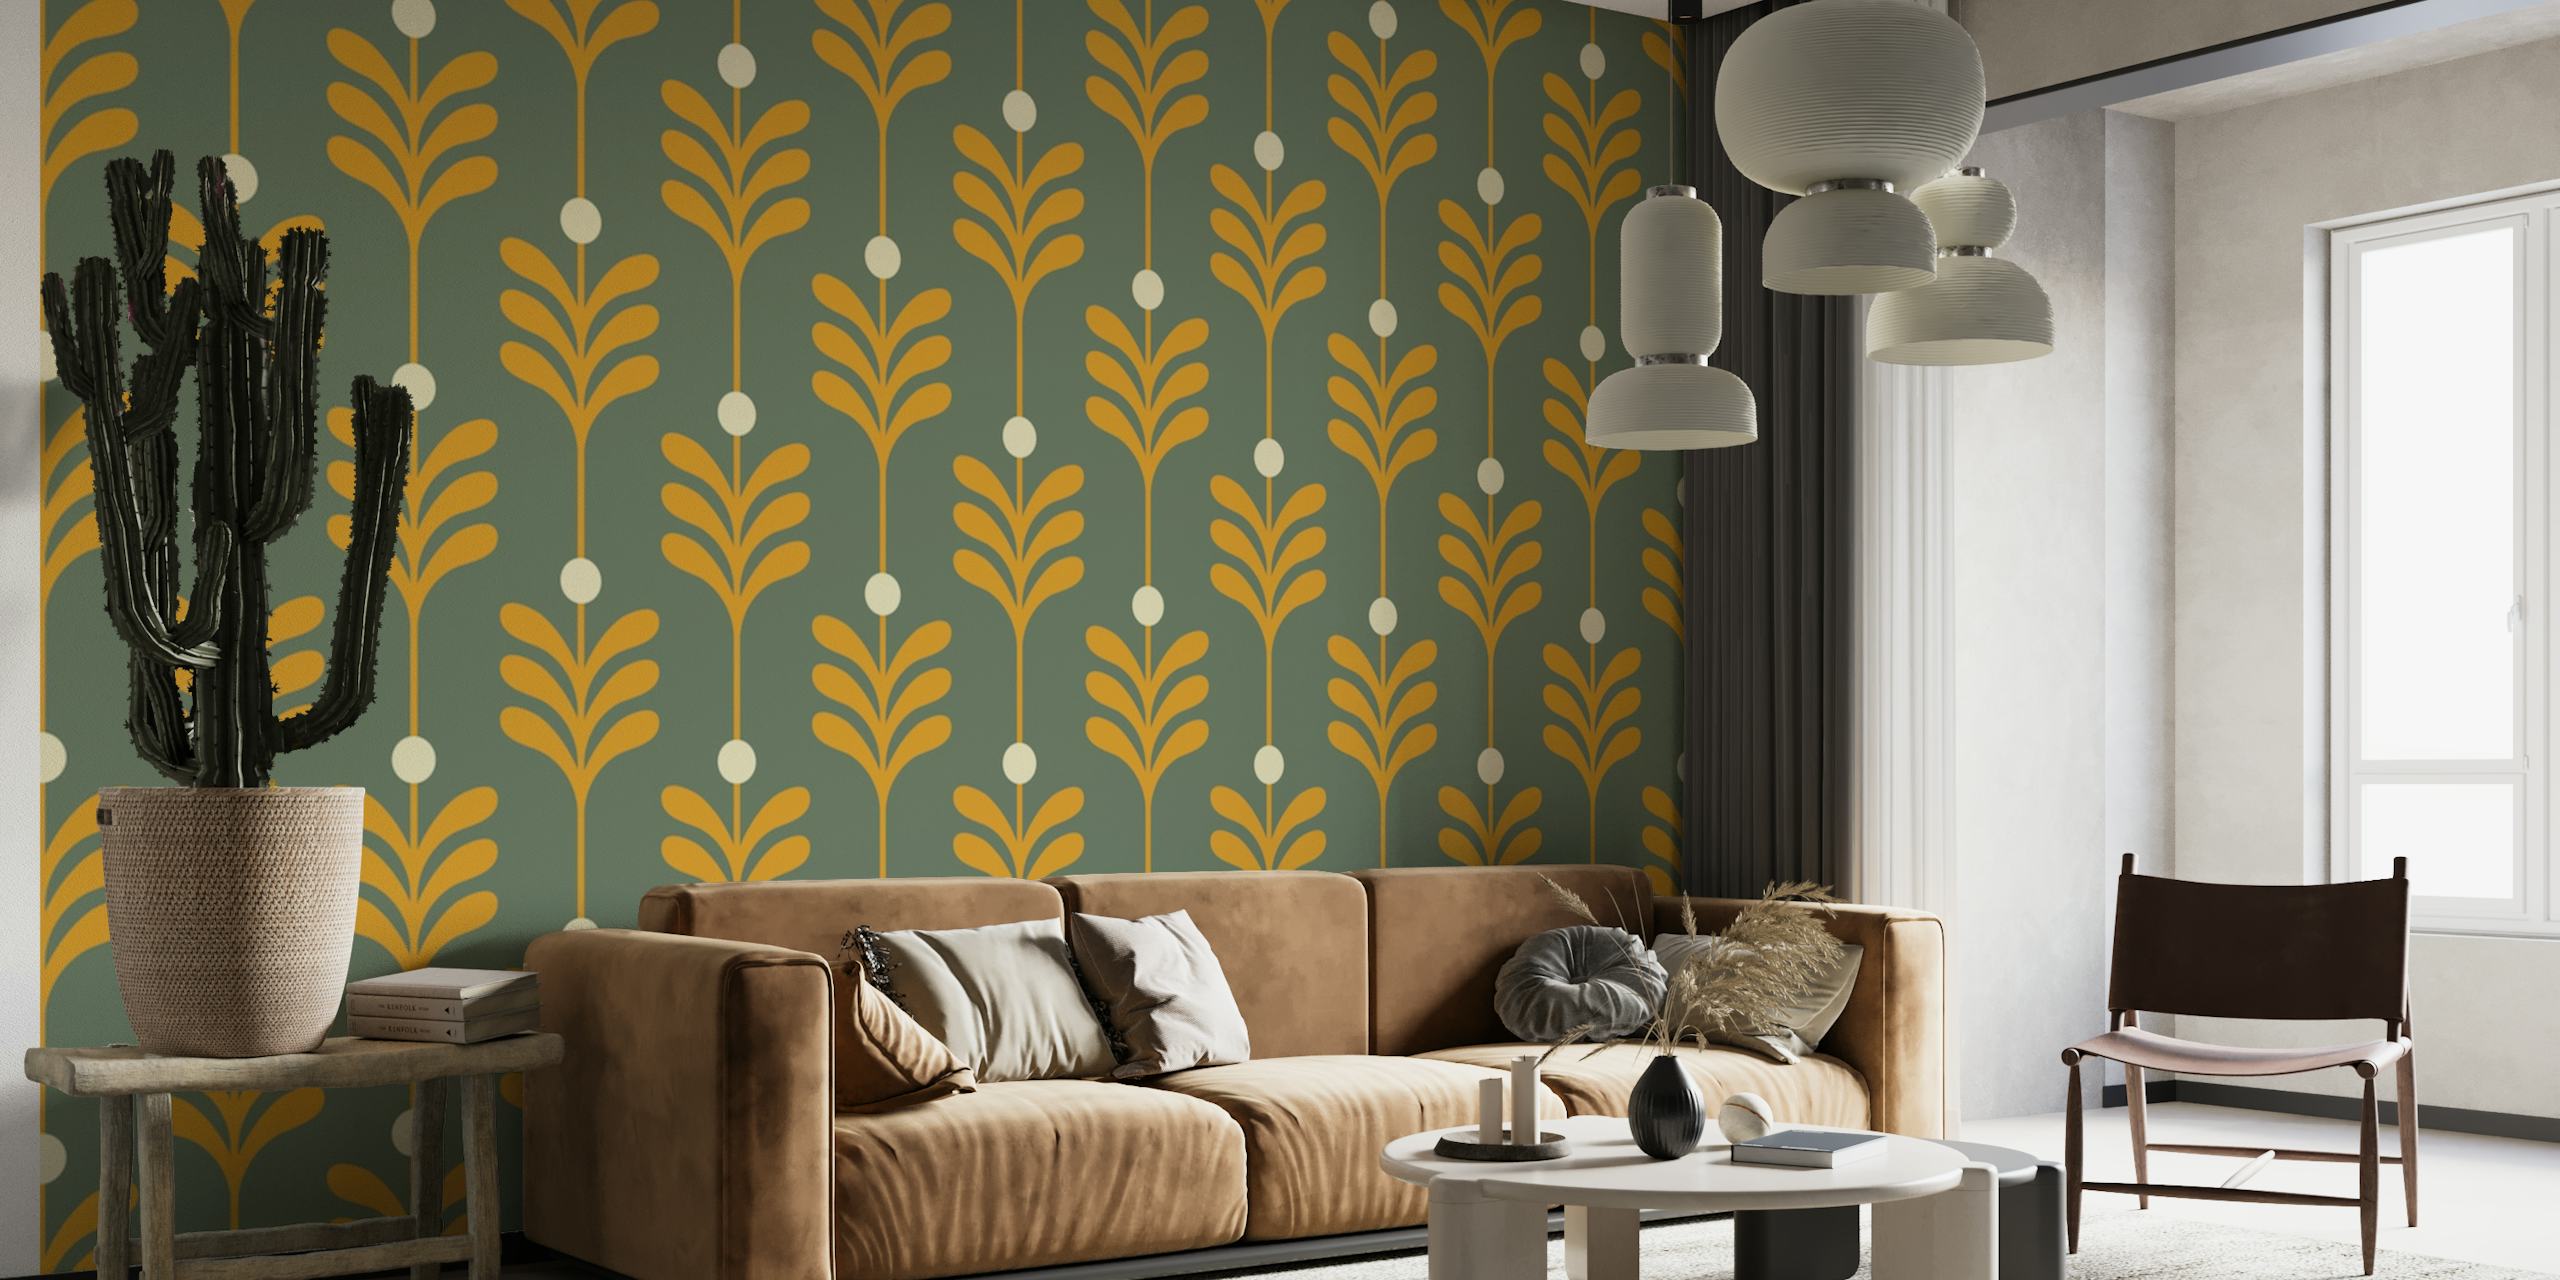 Wandtapete mit Blättern im Art-Deco-Stil mit goldenen Mustern auf blaugrünem Hintergrund